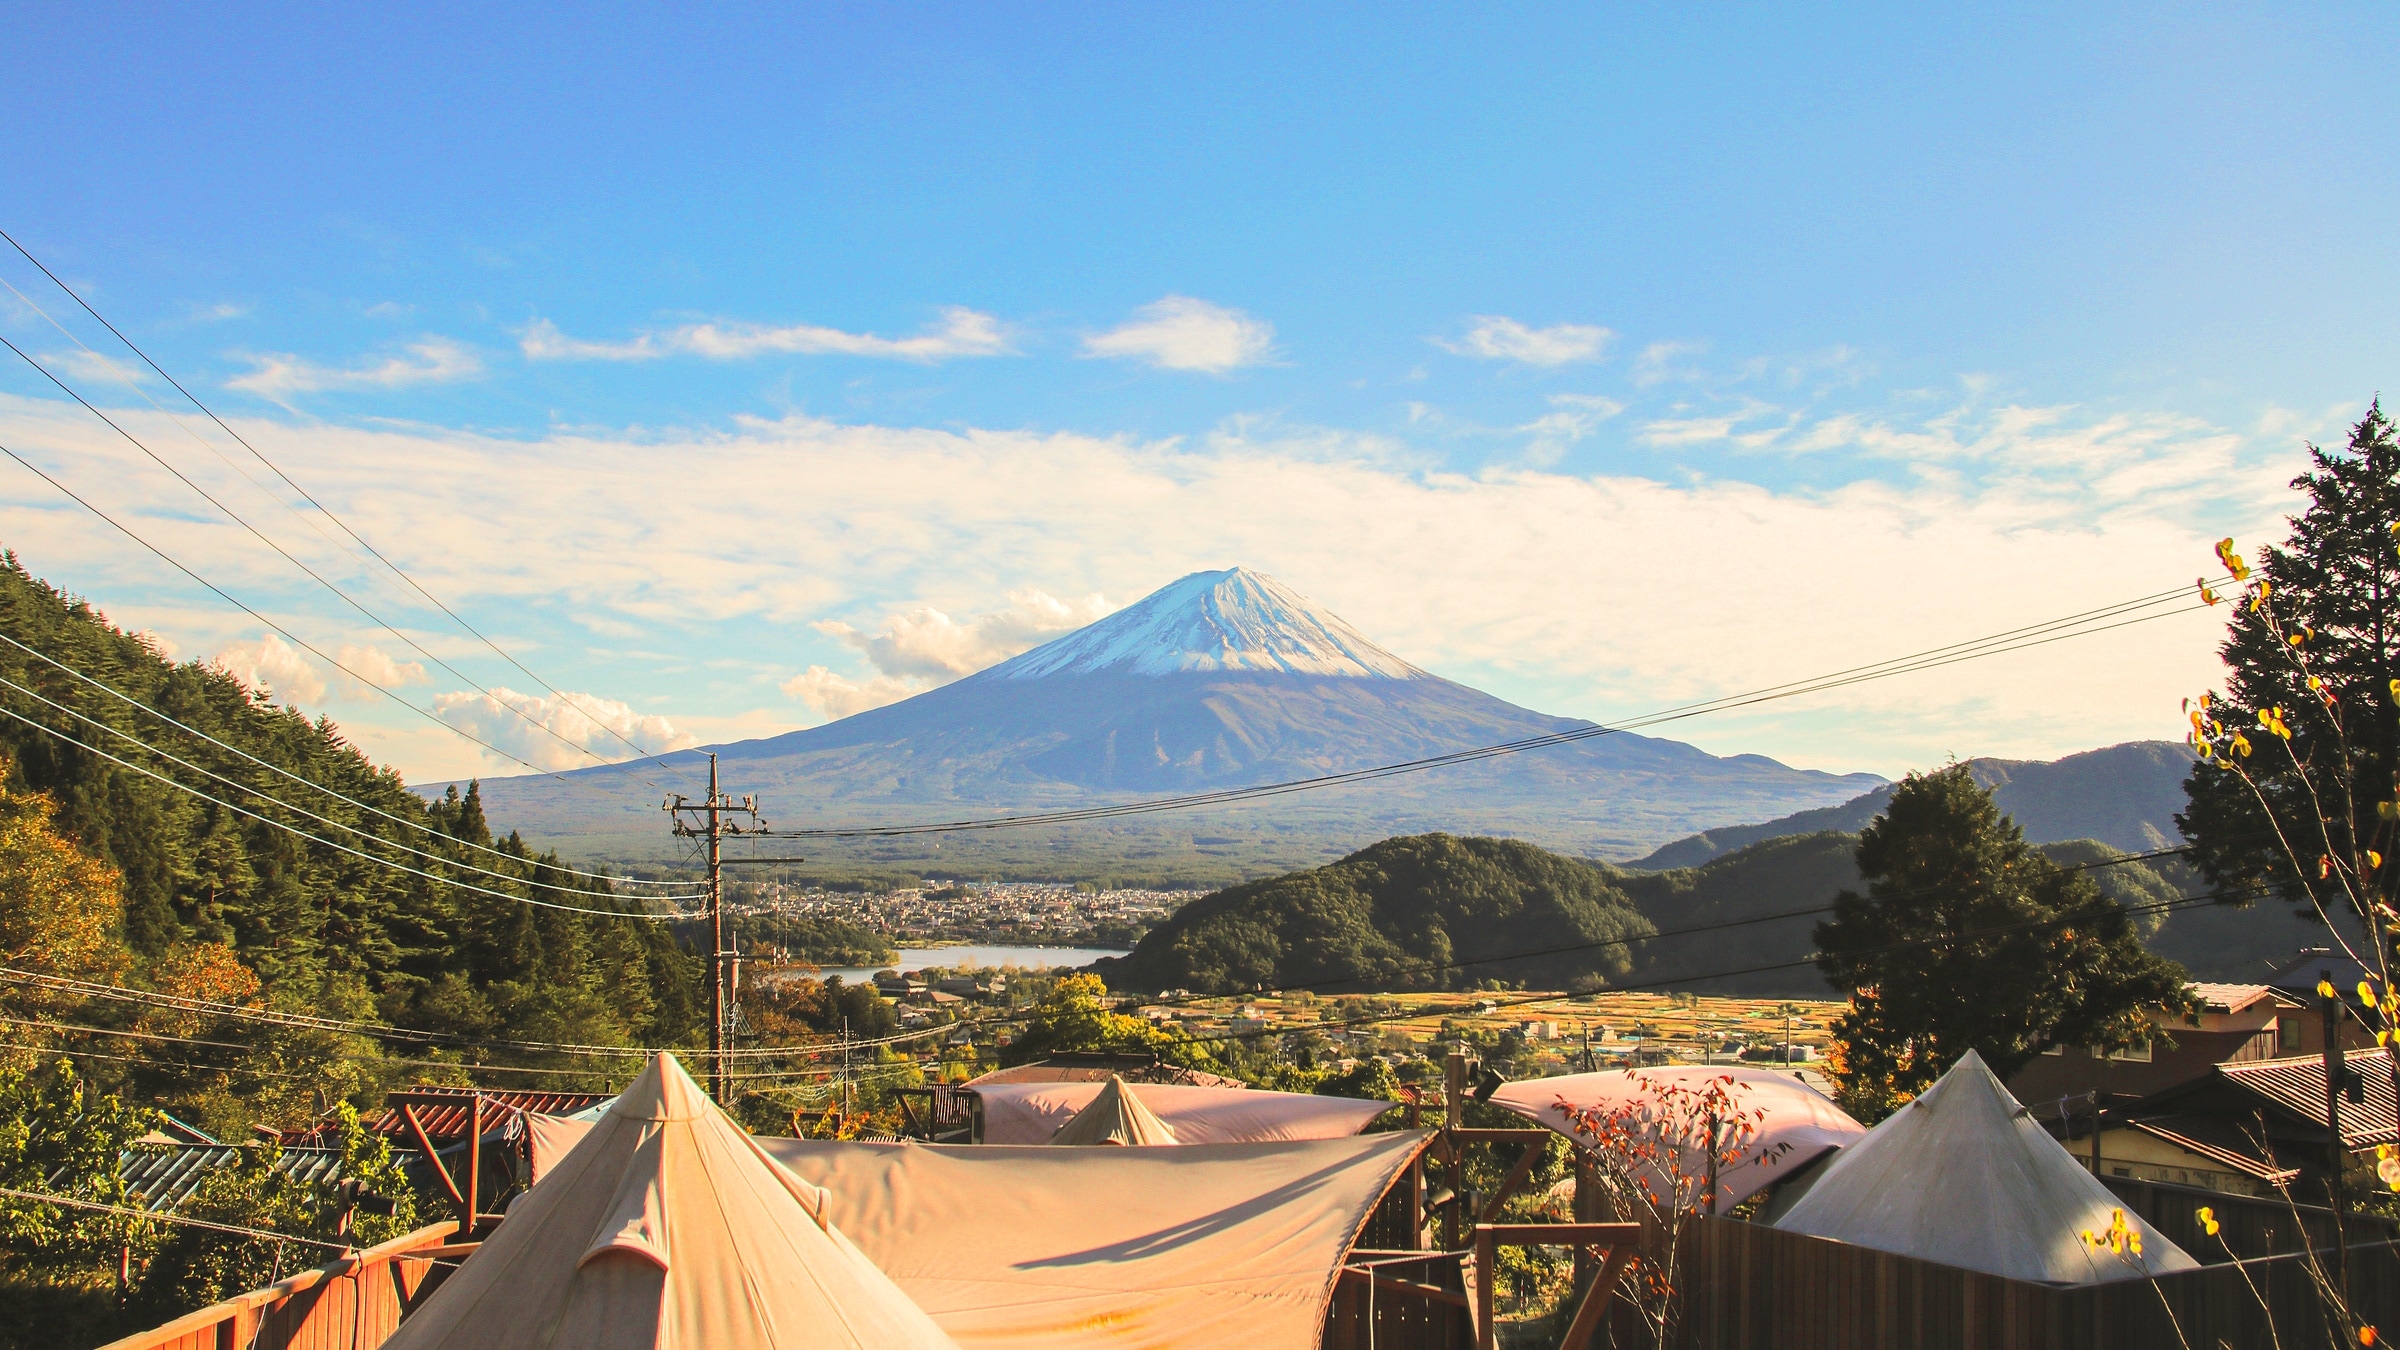 從豪華露營設施看到的富士山。